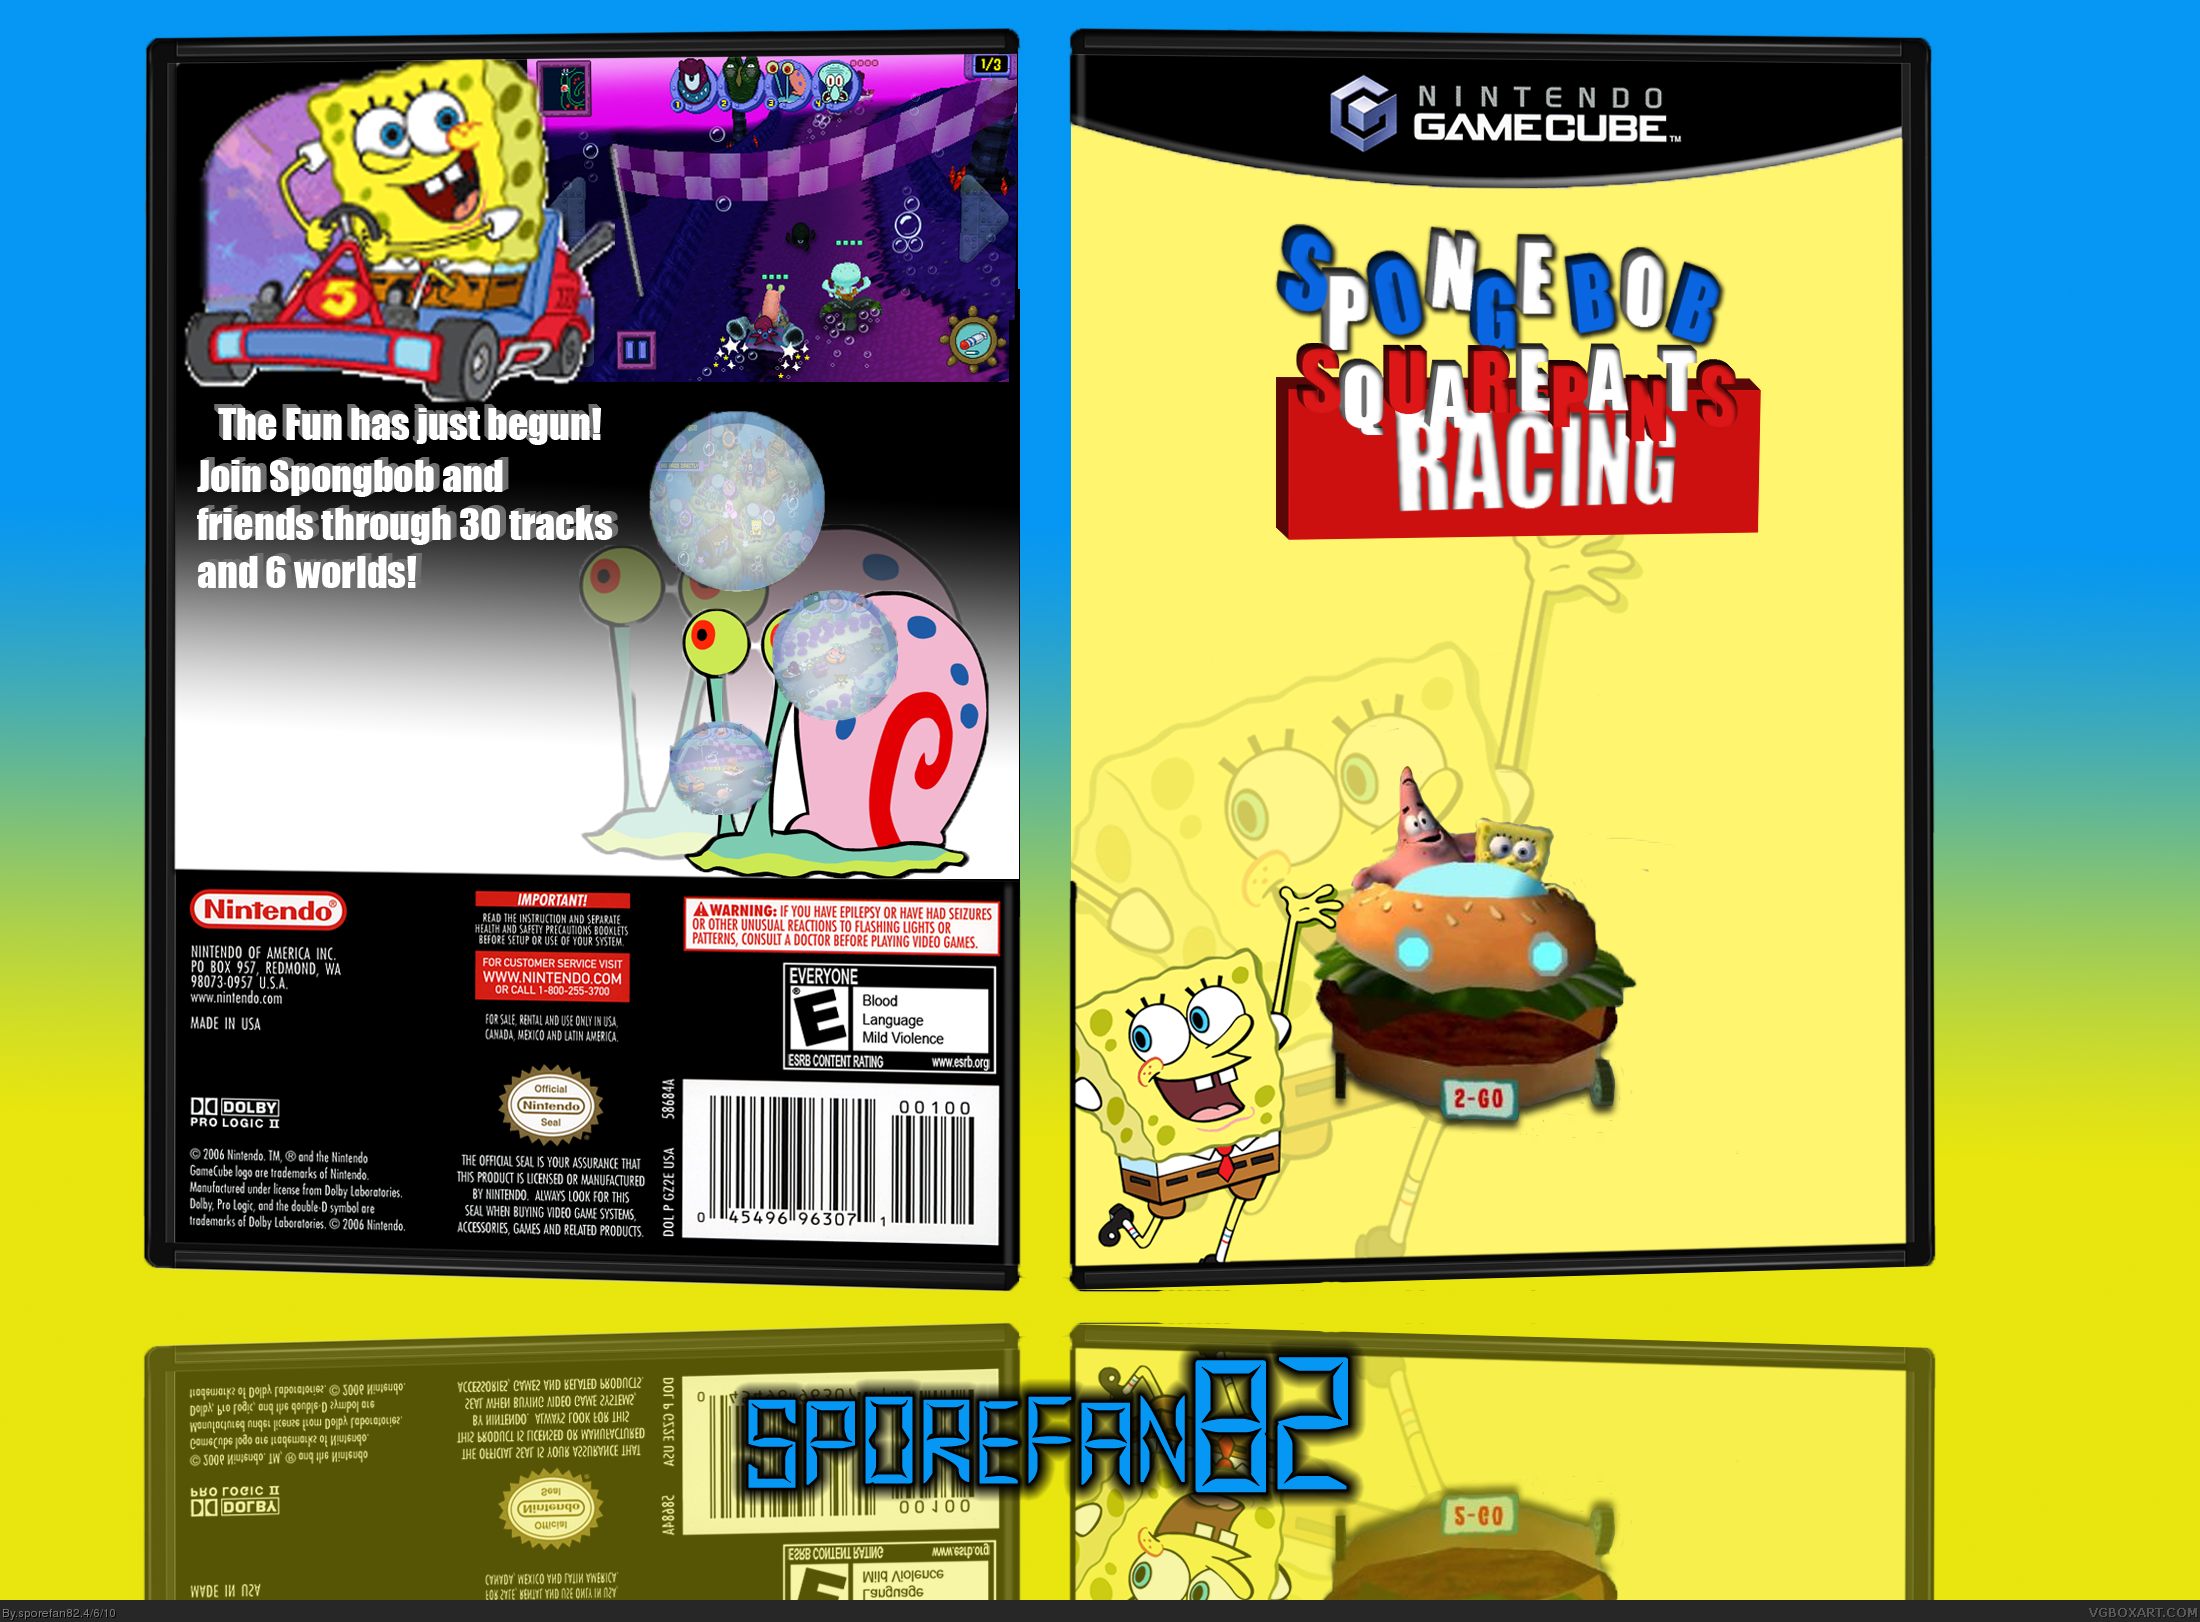 Spongebob Squarepants Racing box cover